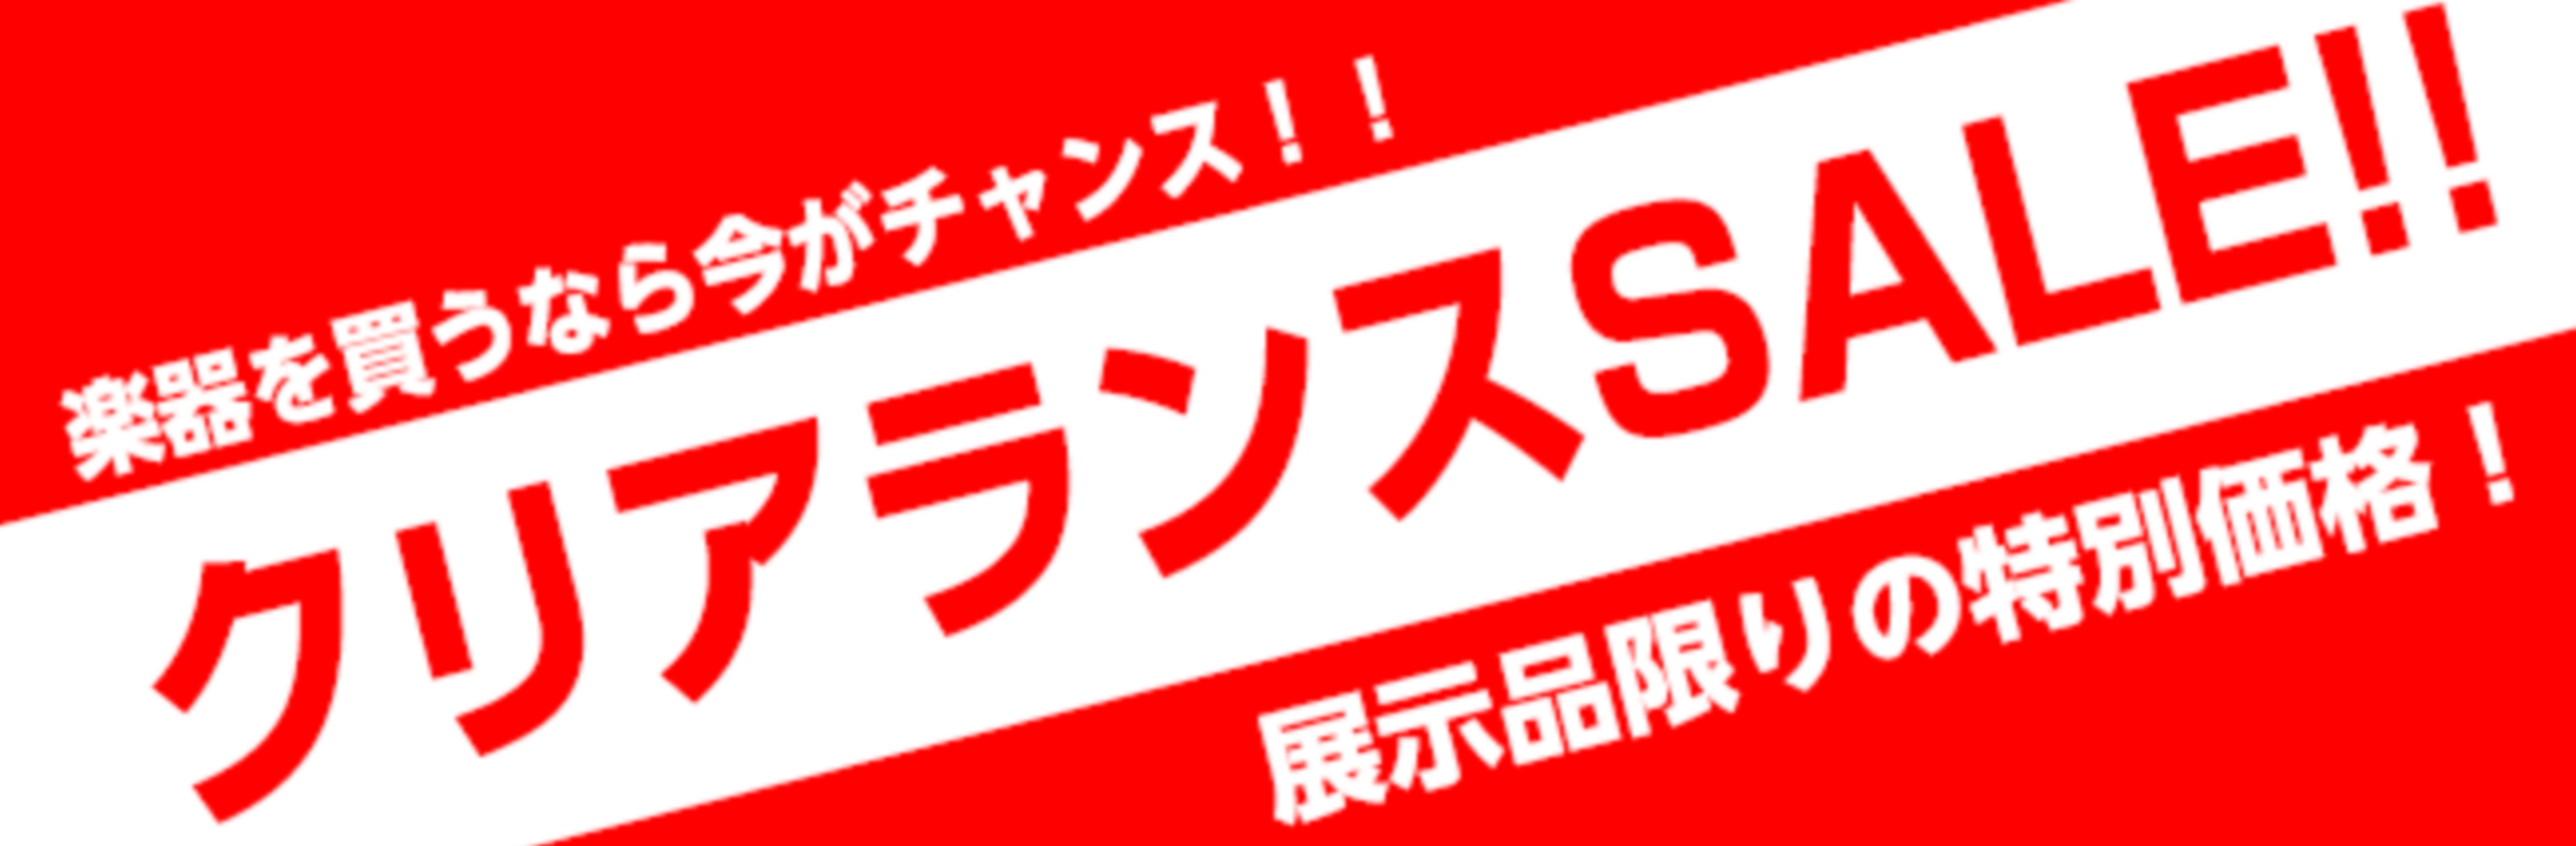 *管楽器クリアランス SALE!! 皆様こんにちは♪島村楽器モレラ岐阜店の管楽器担当澤田です。 今回は在庫限り特別価格のクリアランスSALE管楽器をご紹介します! **管楽器総合ページは[https://www.shimamura.co.jp/shop/gifu/winds-strings/2017 […]